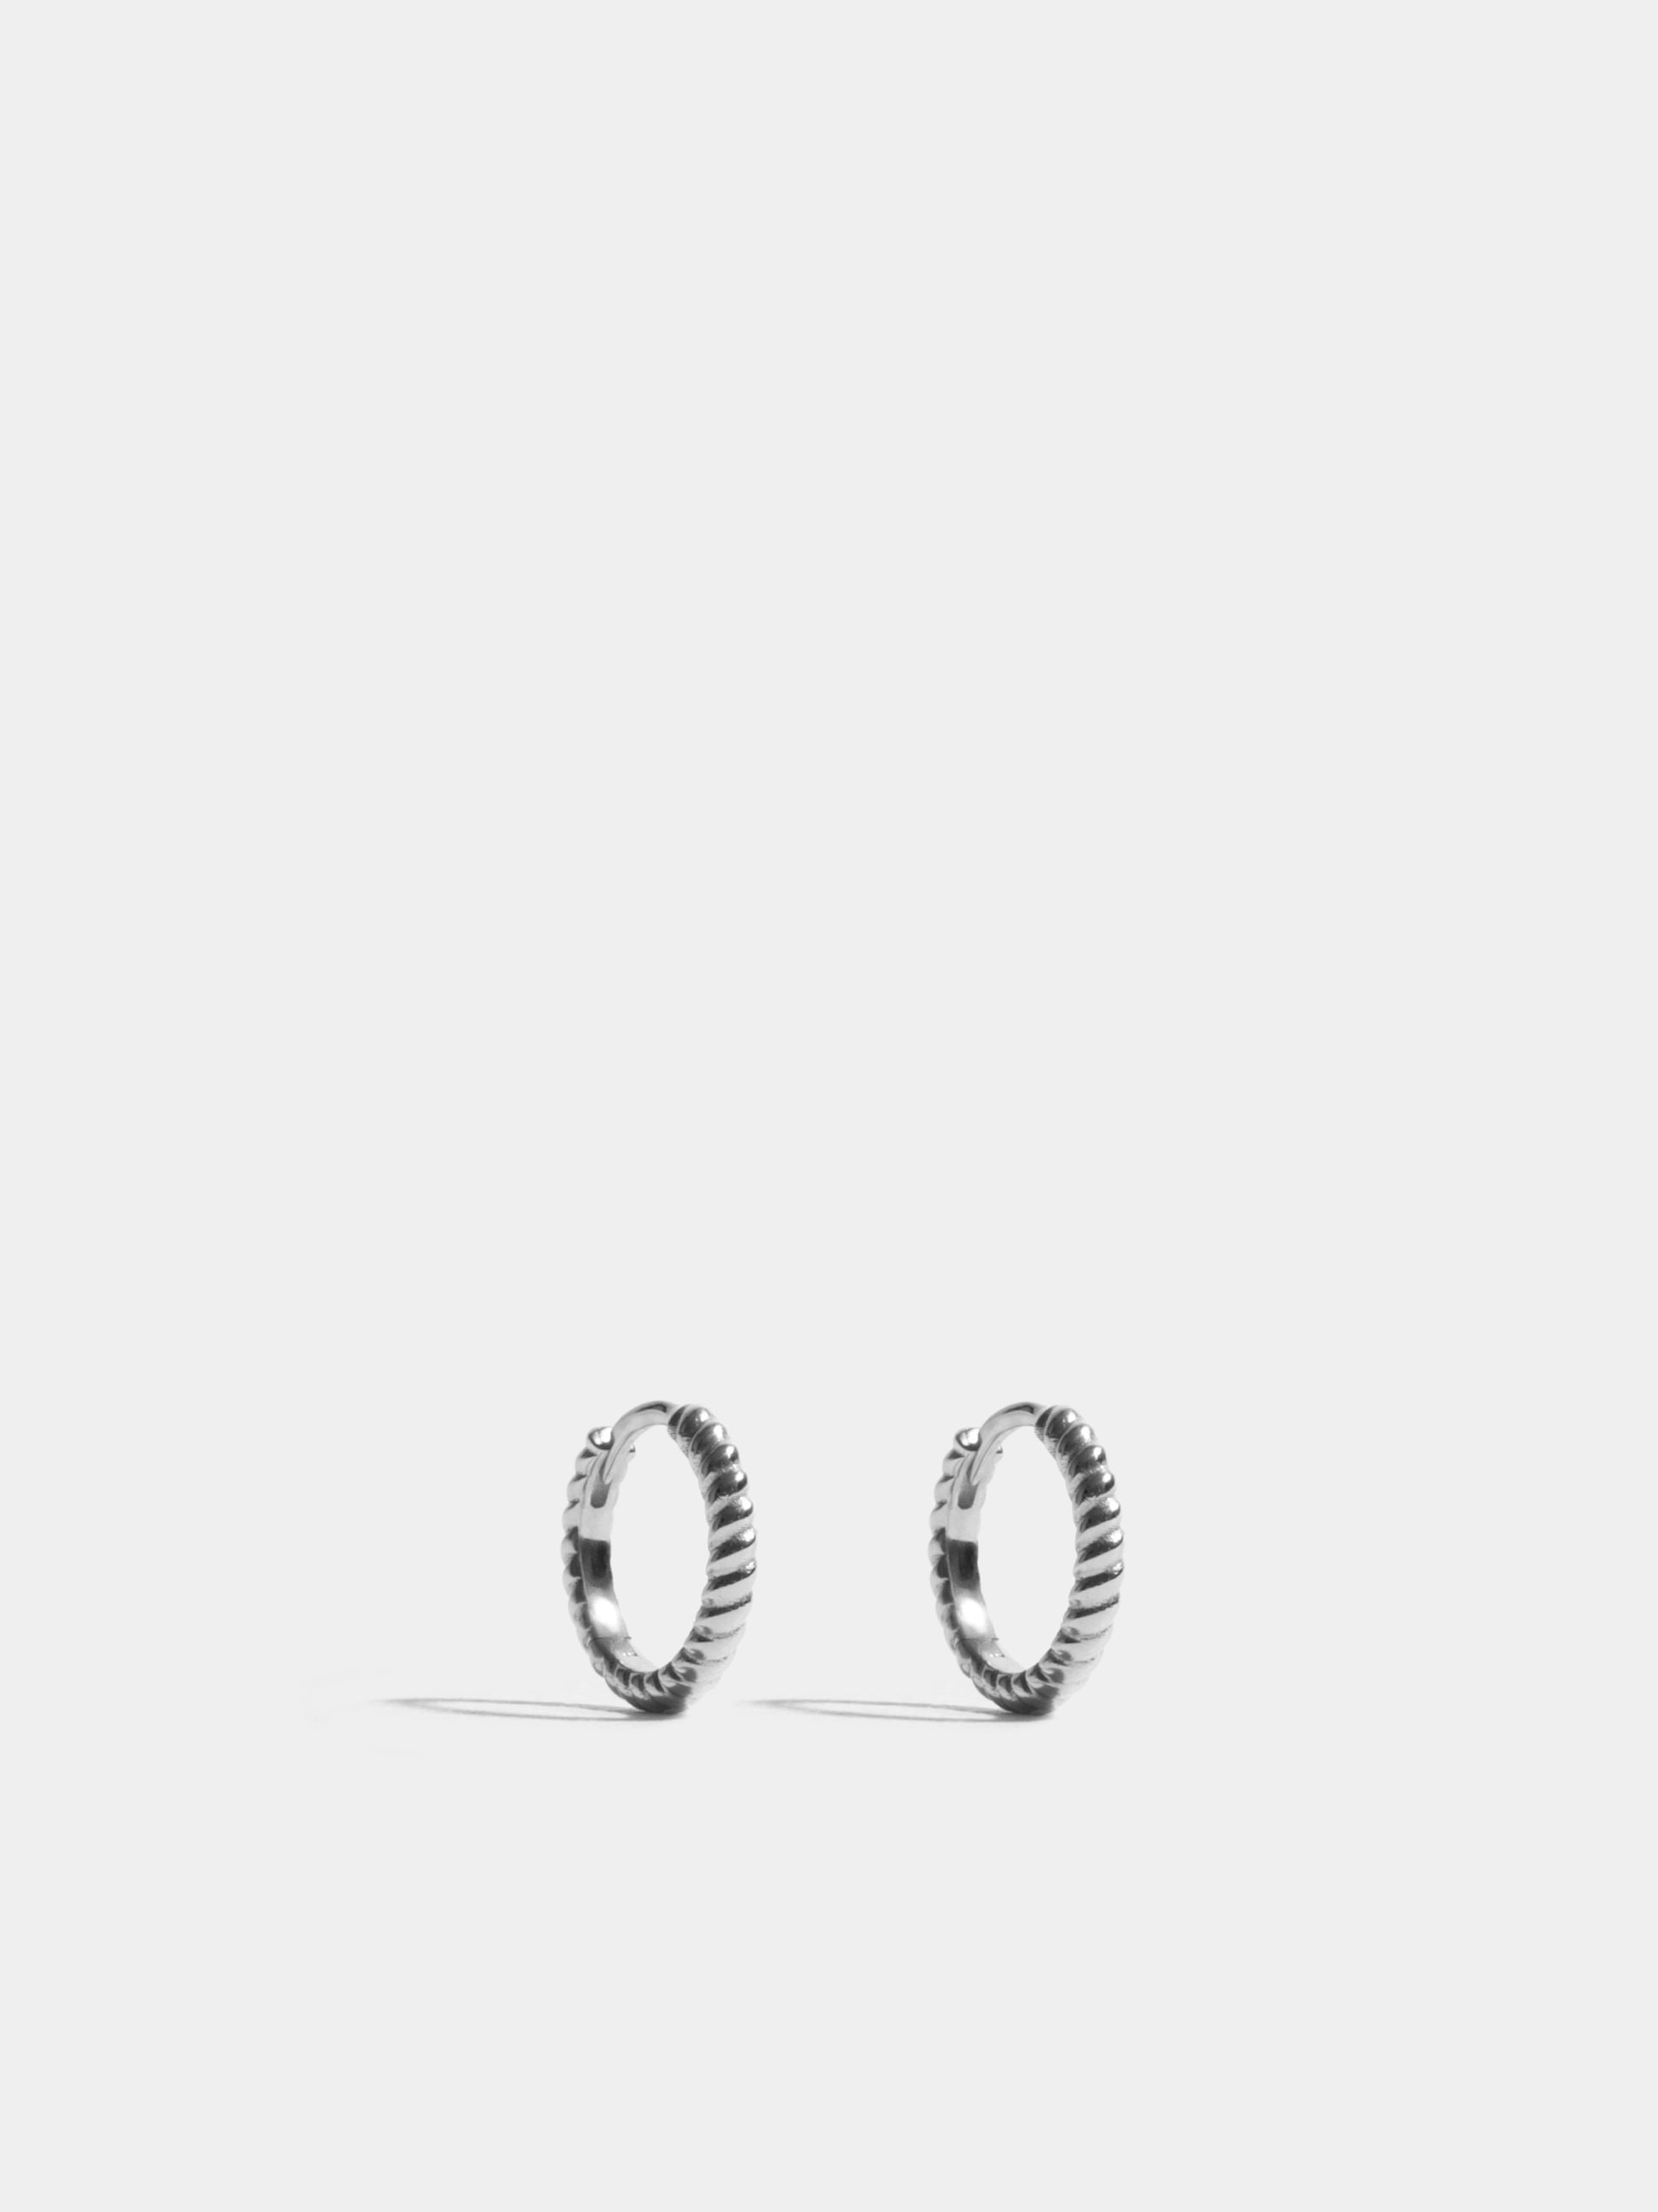 Boucles d'oreilles Anagramme torsadée en Or blanc éthique 18 carats certifié Fairmined